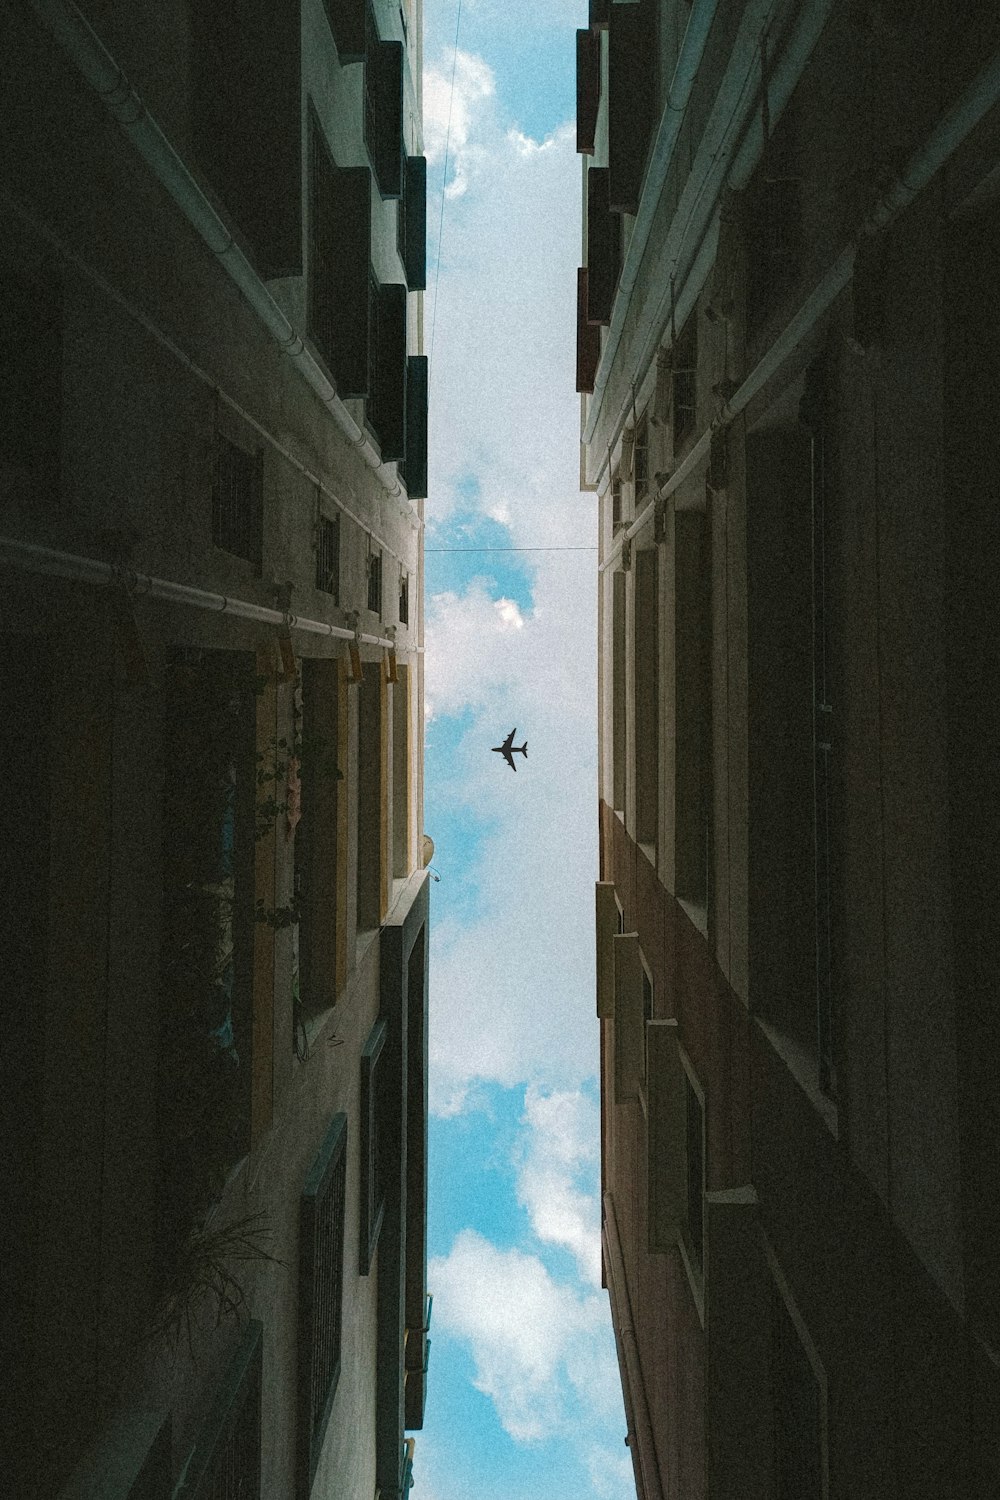 un avion volant dans le ciel entre deux bâtiments